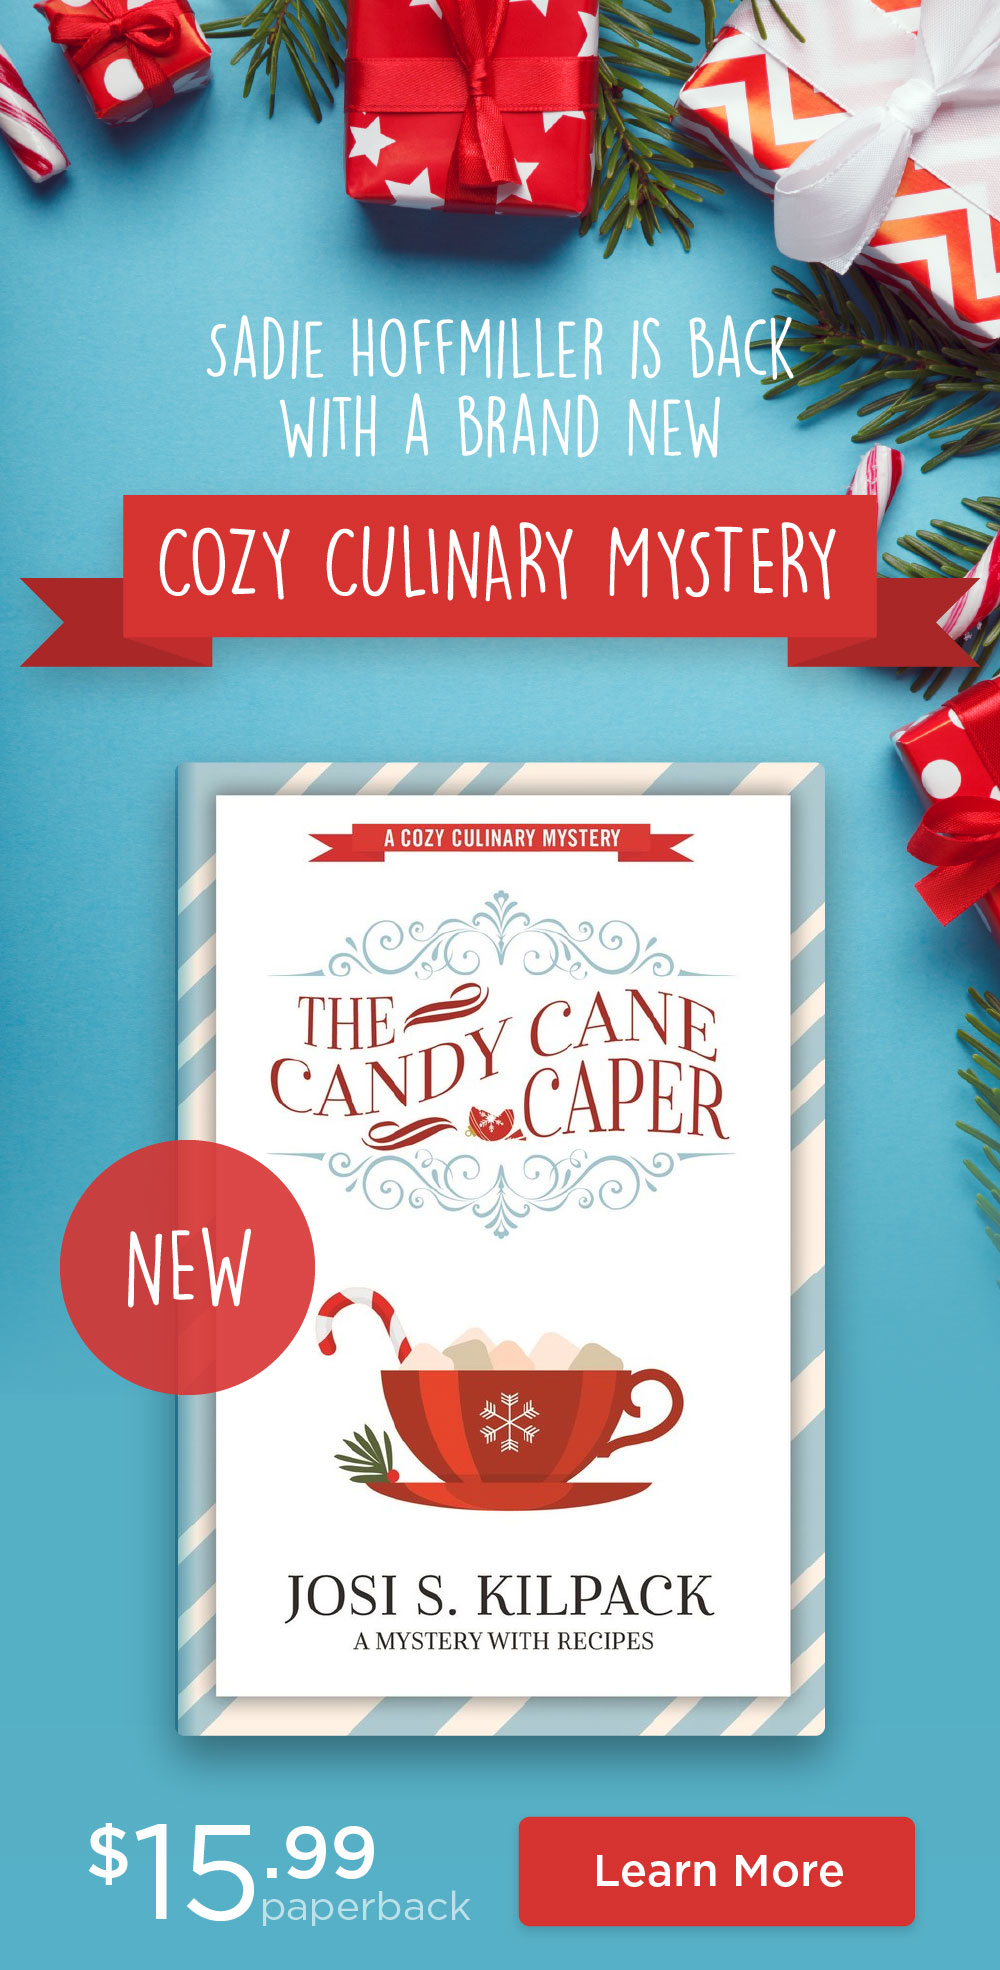 Candy Cane Caper